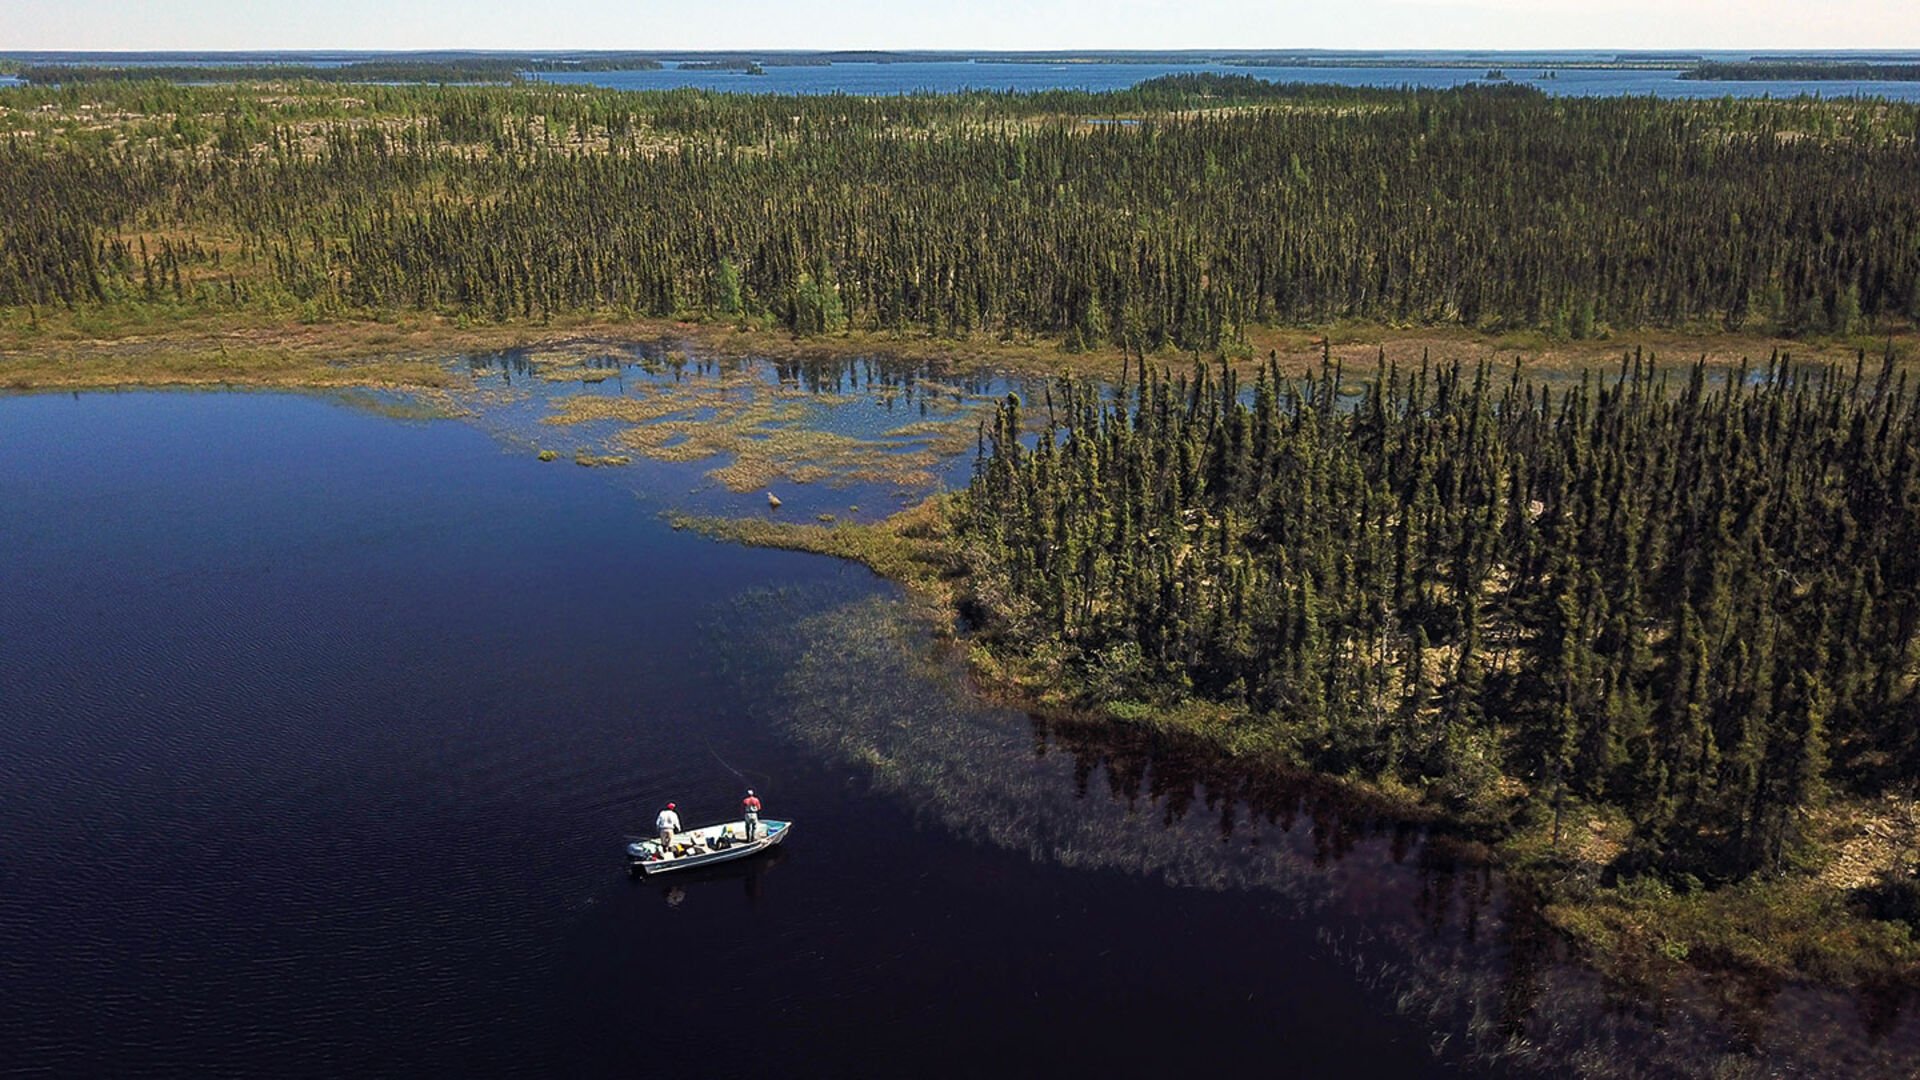  Wasser und Wälder bis ans Ende des Horizonts: Die kanadische Wildnis ist unermesslich gross und voller Fisch.  